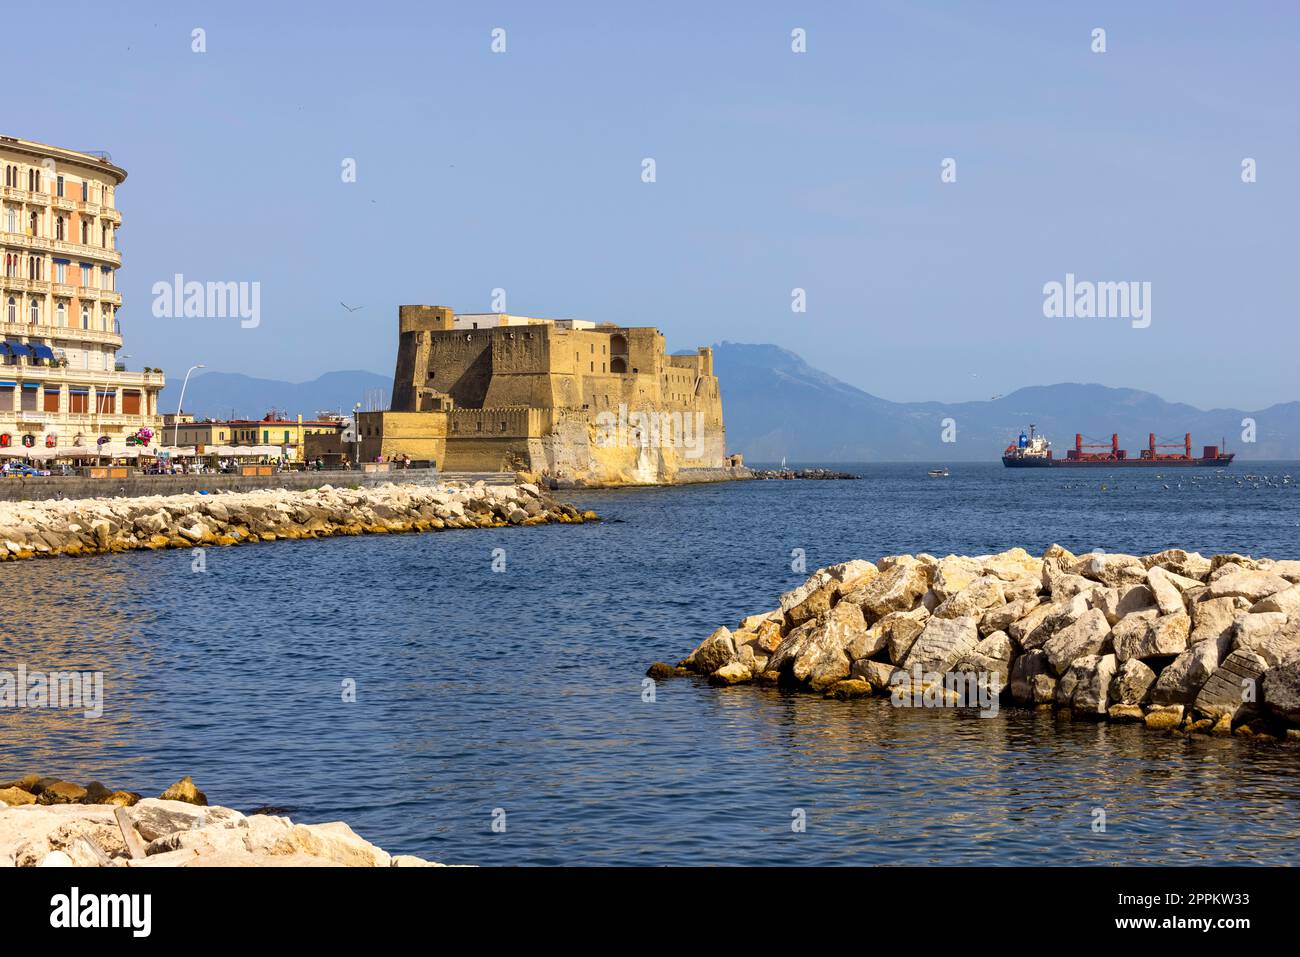 Castel dell'Ovo, château médiéval situé sur une petite île au large de la côte de Naples, en Italie Banque D'Images